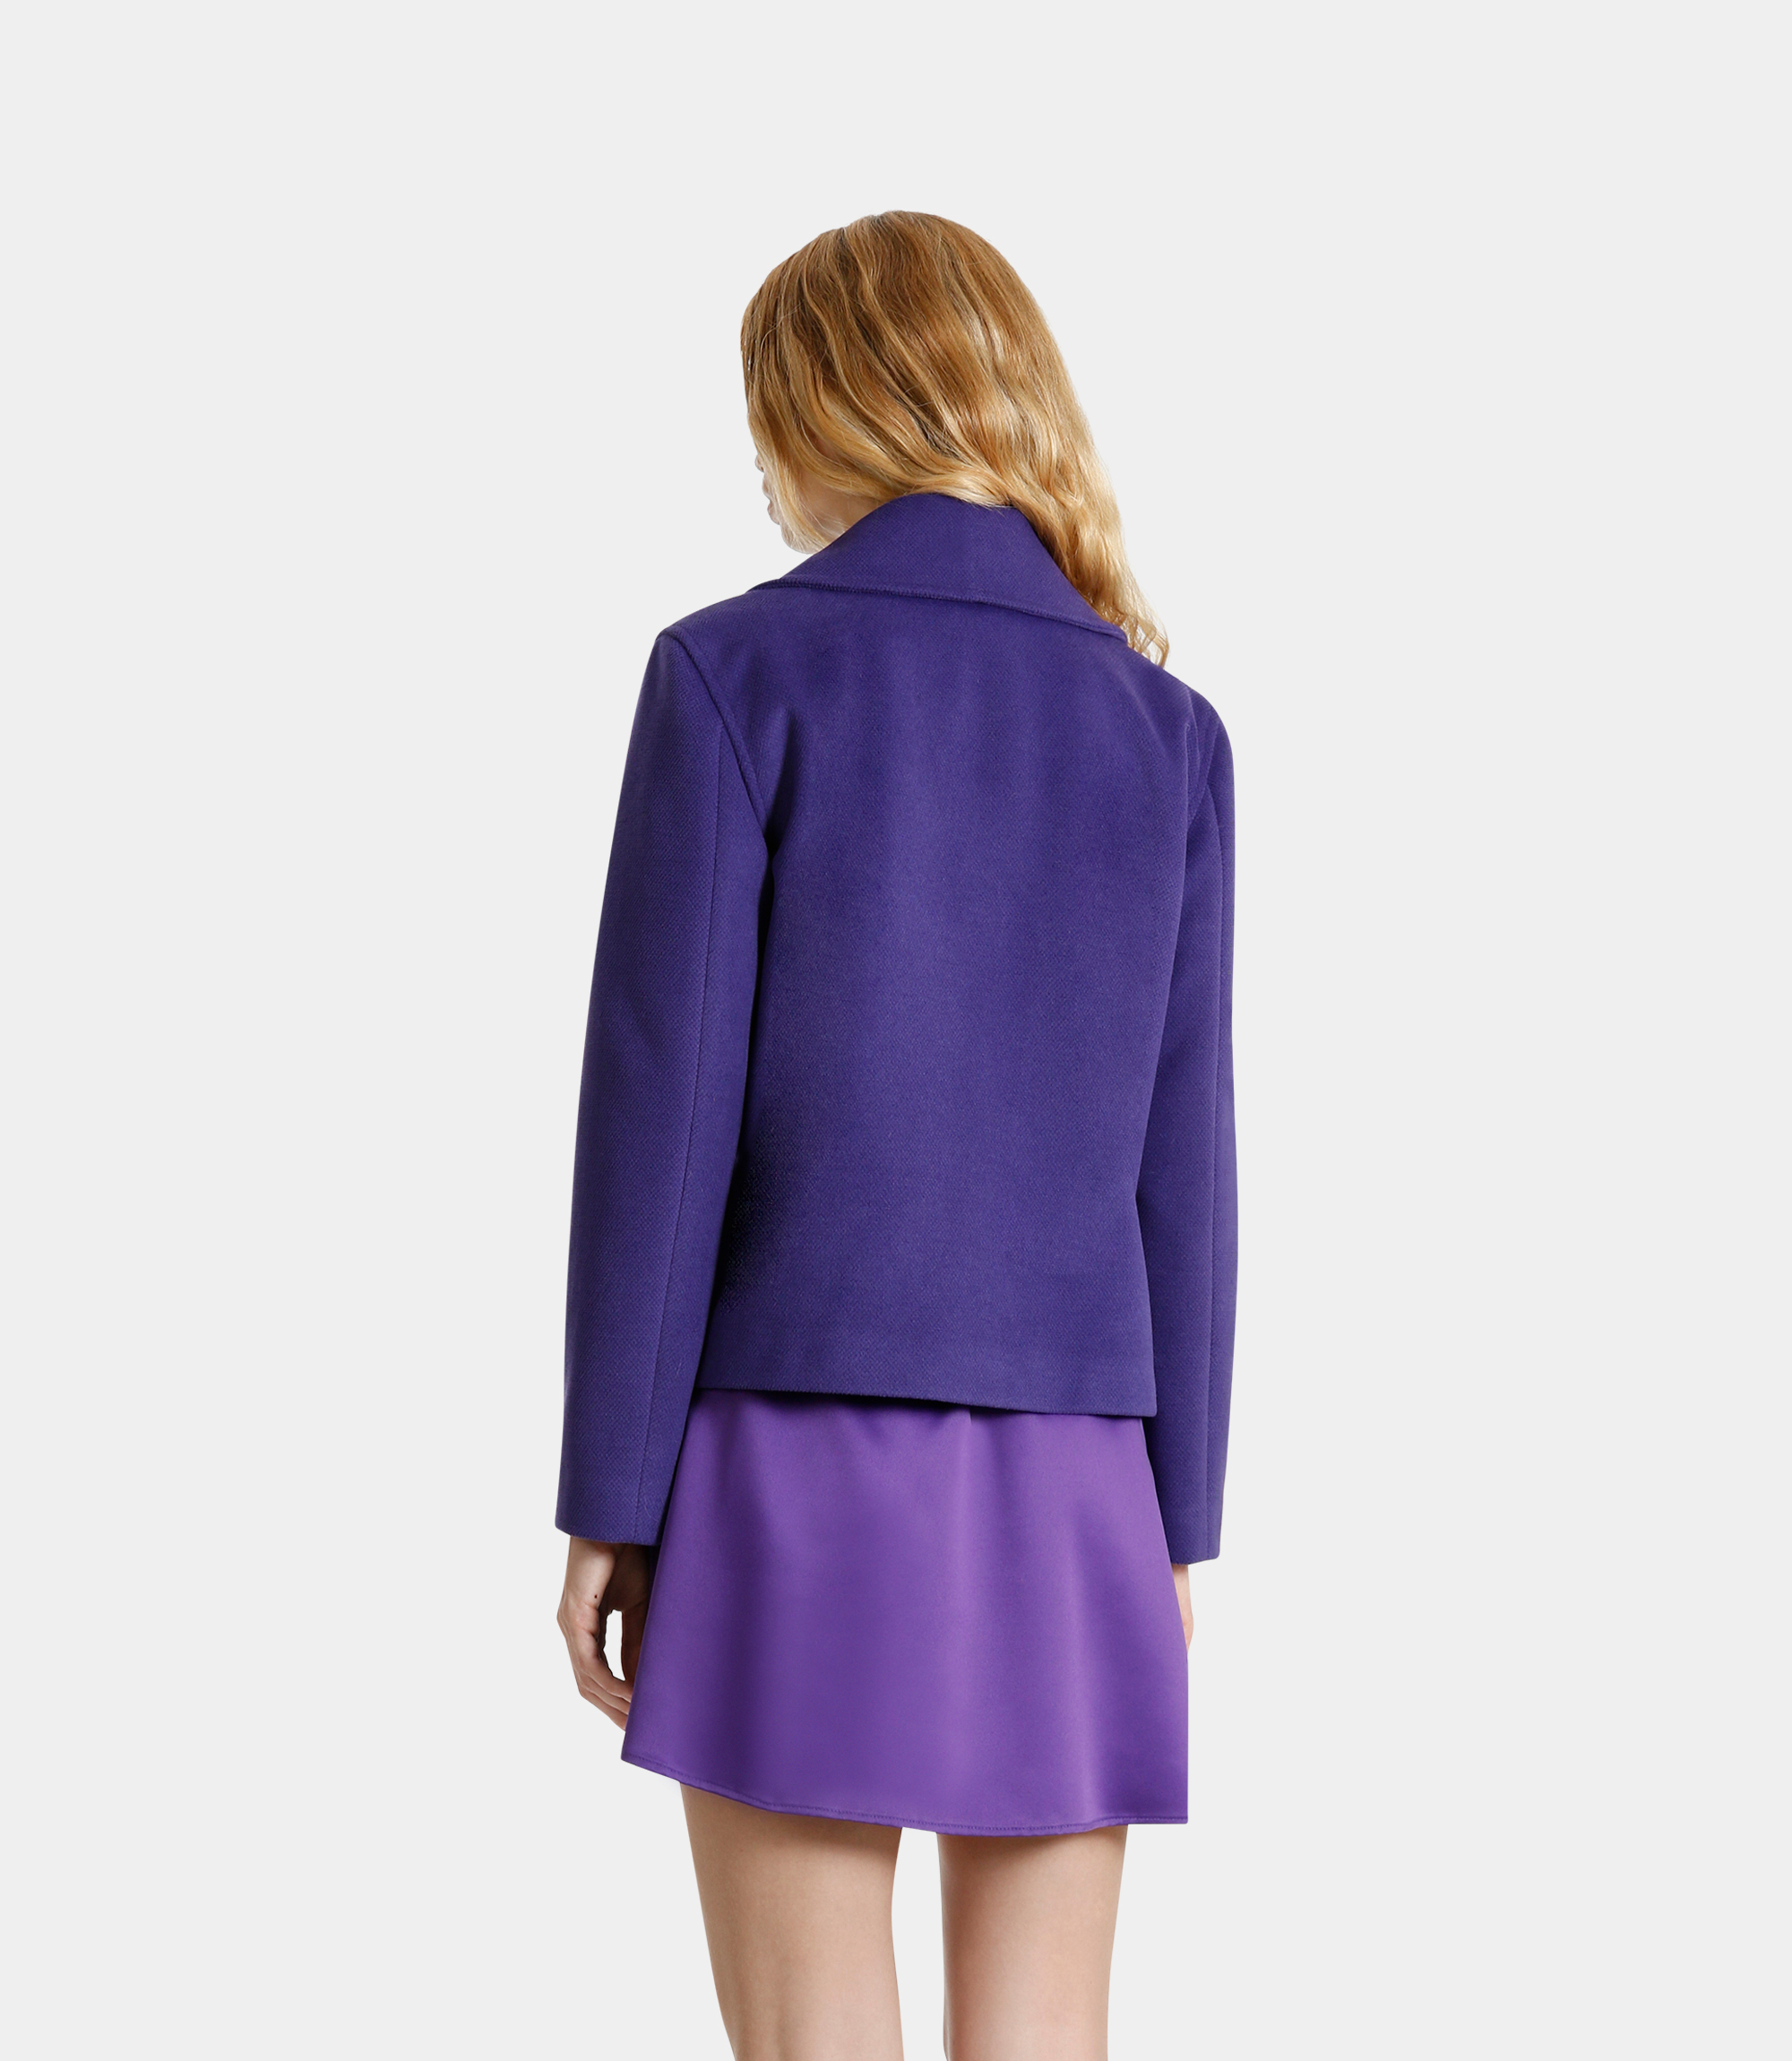 Squared-off coat at bust height - Violet - NaraMilano